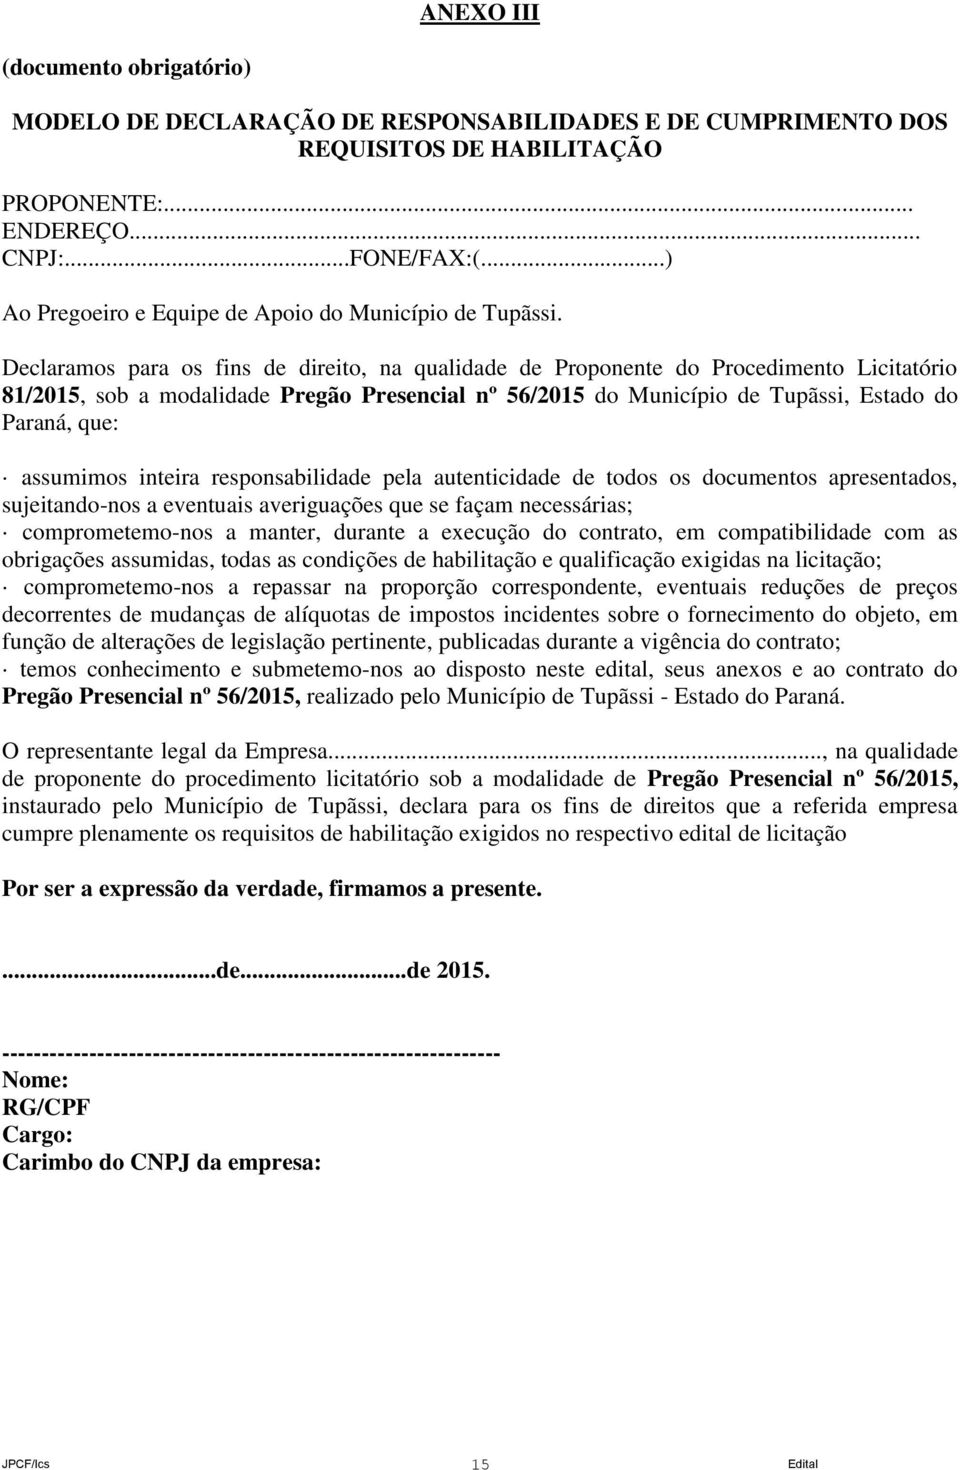 Declaramos para os fins de direito, na qualidade de Proponente do Procedimento Licitatório 81/2015, sob a modalidade Pregão Presencial nº 56/2015 do Município de Tupãssi, Estado do Paraná, que: